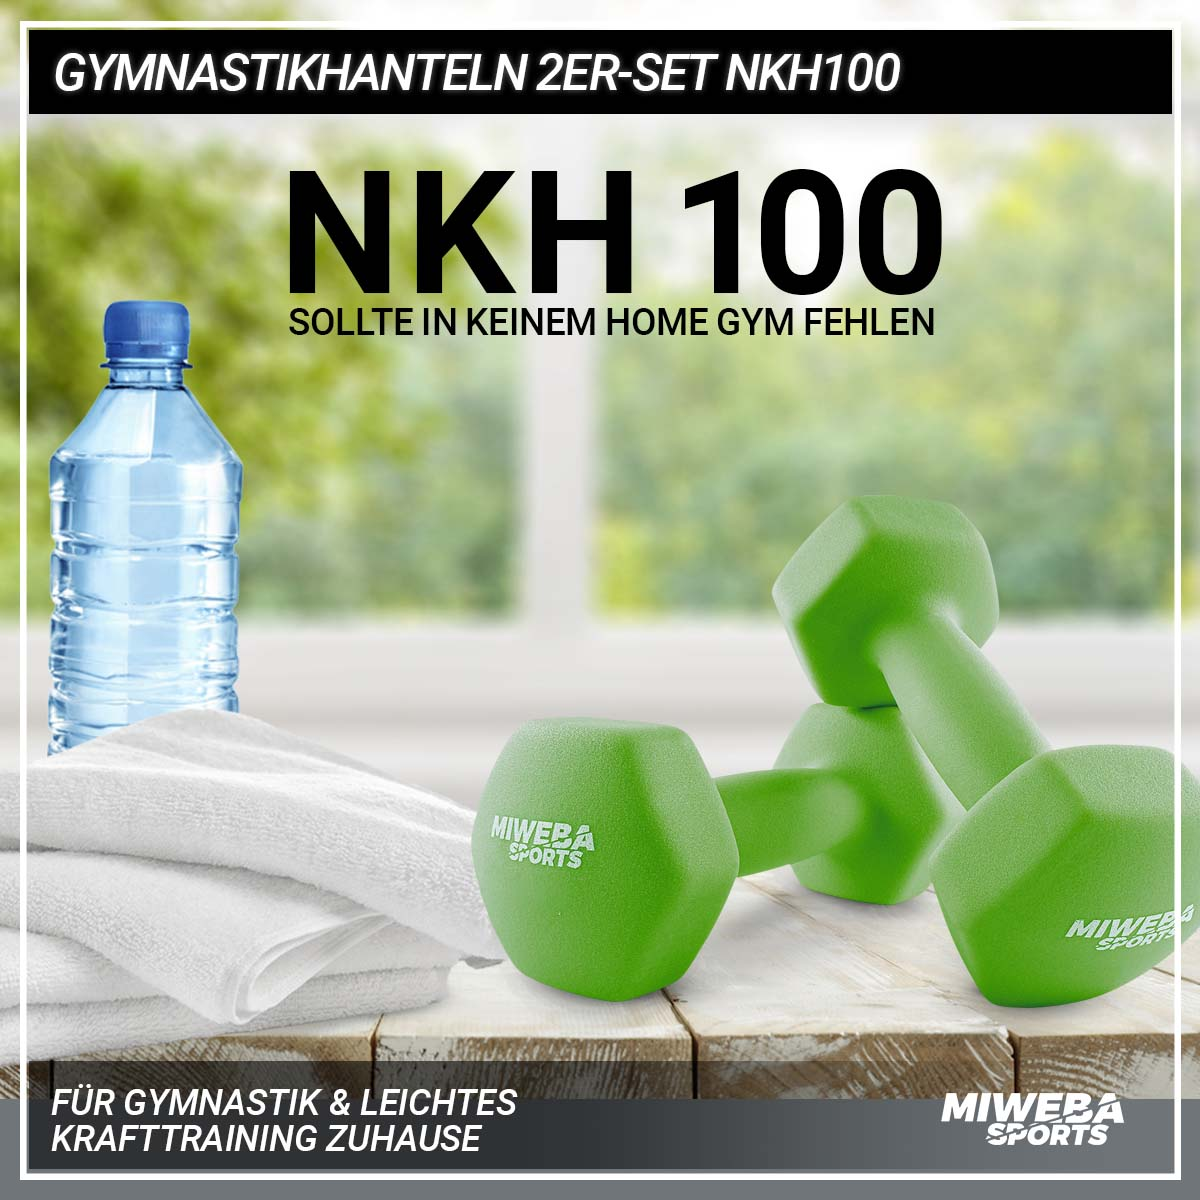 MIWEBA SPORTS Kurzhantel, 2er Gymnastikhanteln Grün Set NKH100